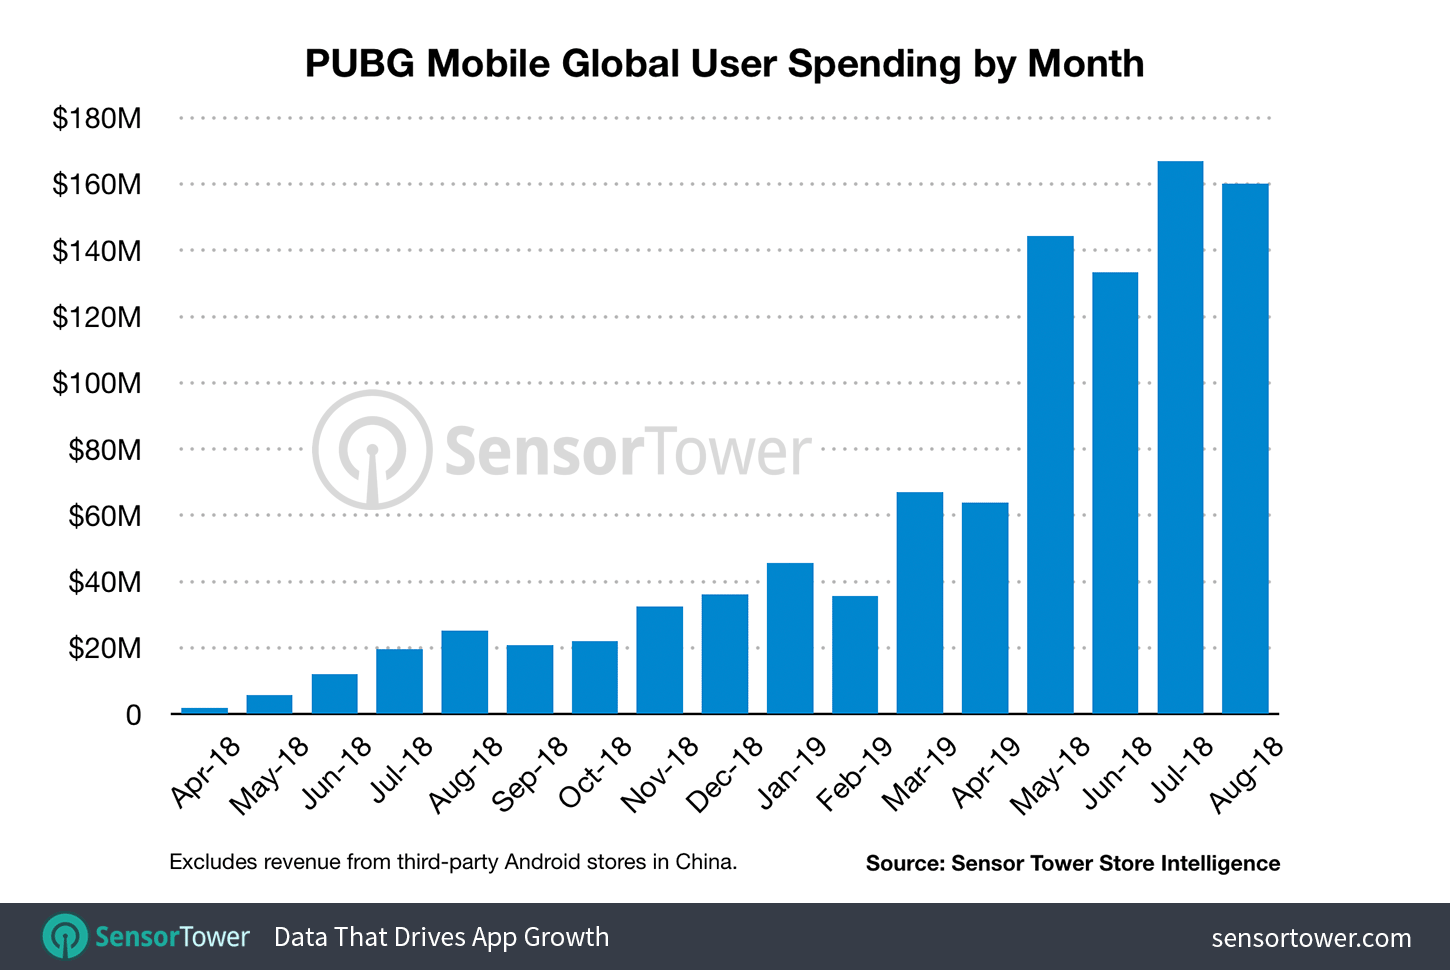 PUBG Mobile Revenue Monthly Through August 2019